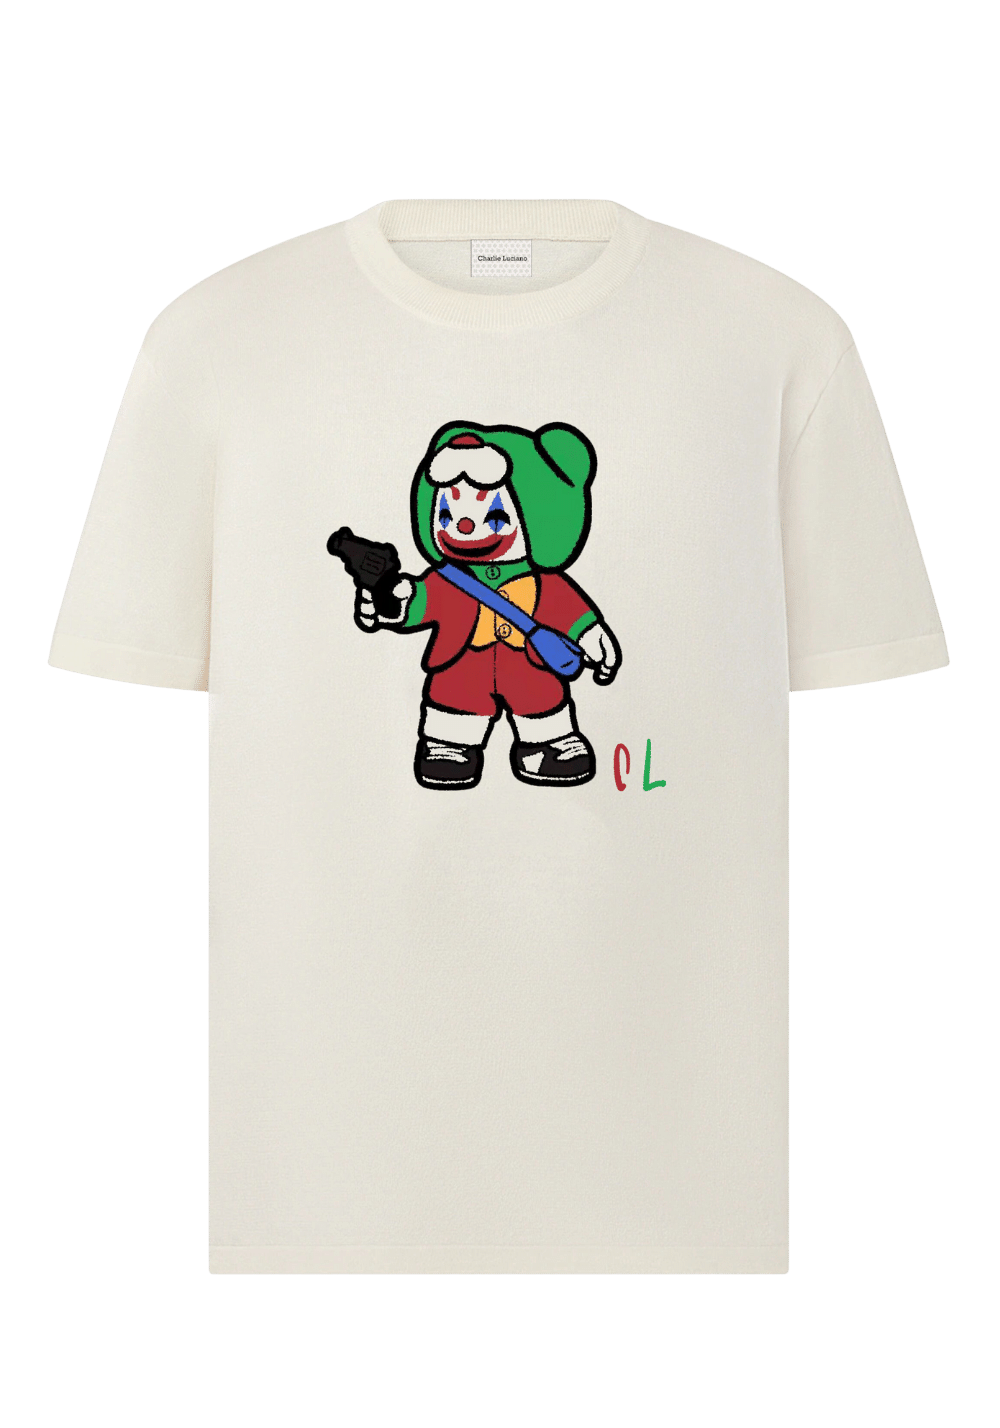 'Joker Boy' Knitted T-Shirt - PSYLOS 1, 'Joker Boy' Knitted T-Shirt, T-Shirt, Charlie Luciano, PSYLOS 1